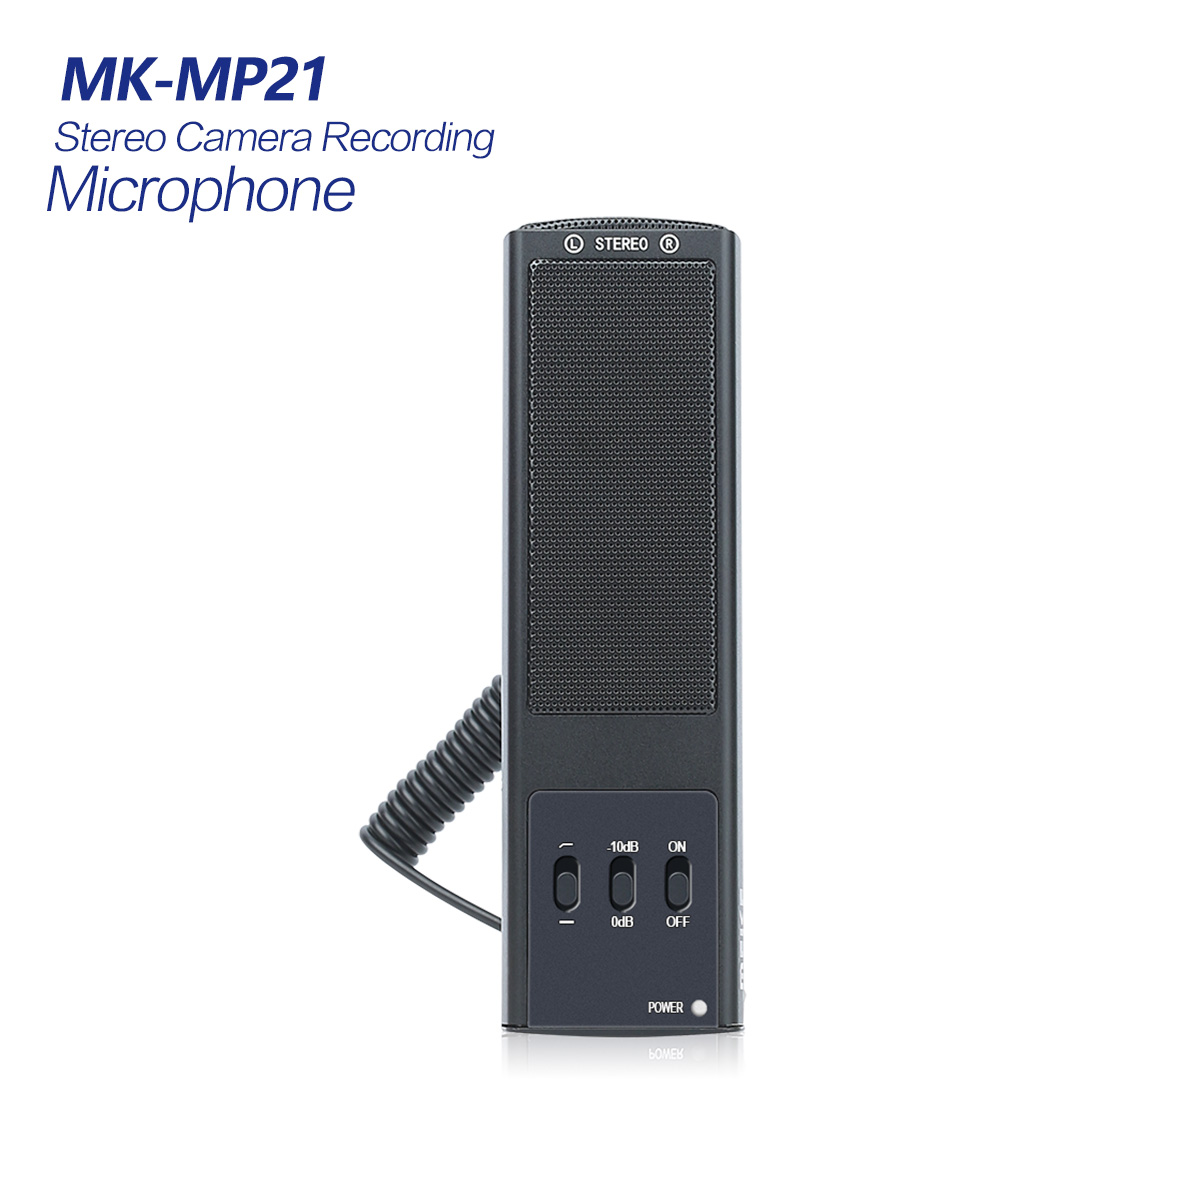 MK-MP21 Microphone